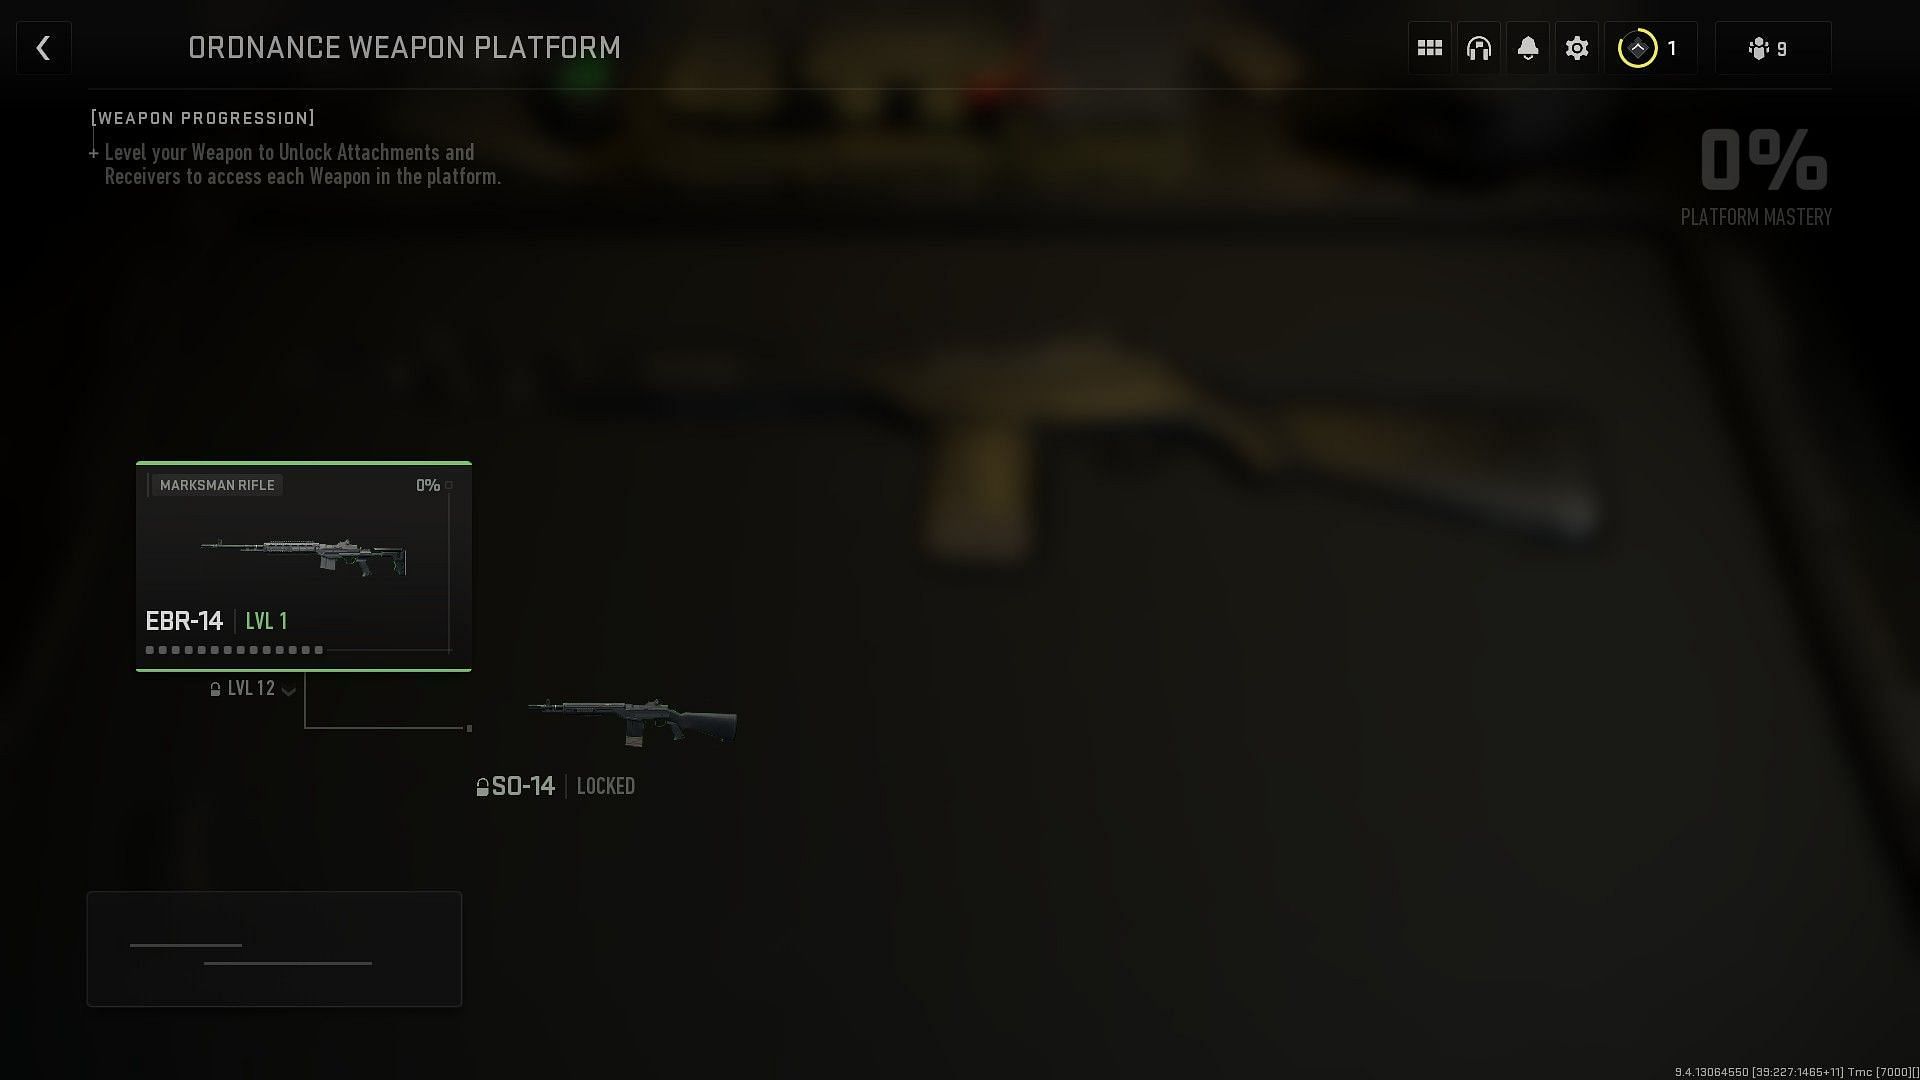 Ordanace weapon Platform (Image via Activision)